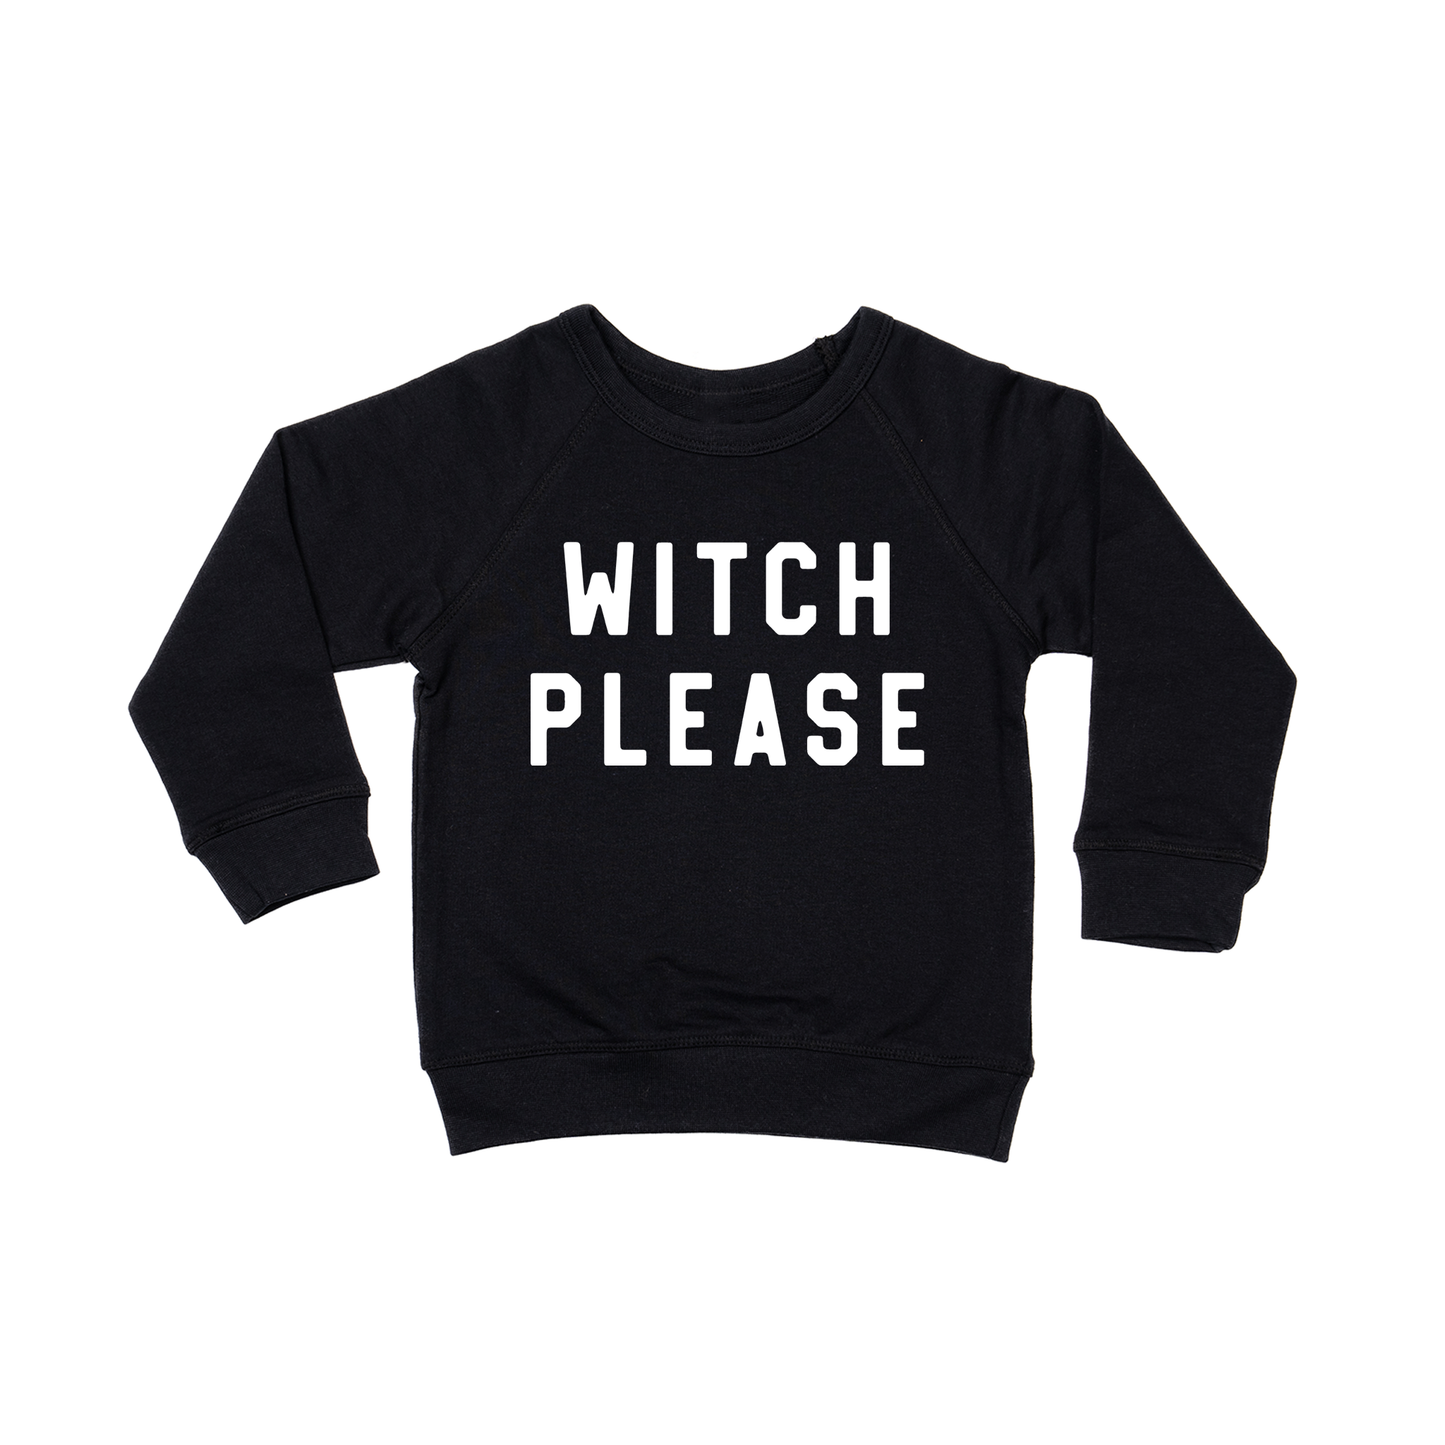 Witch Please (White) - Kids Sweatshirt (Black)